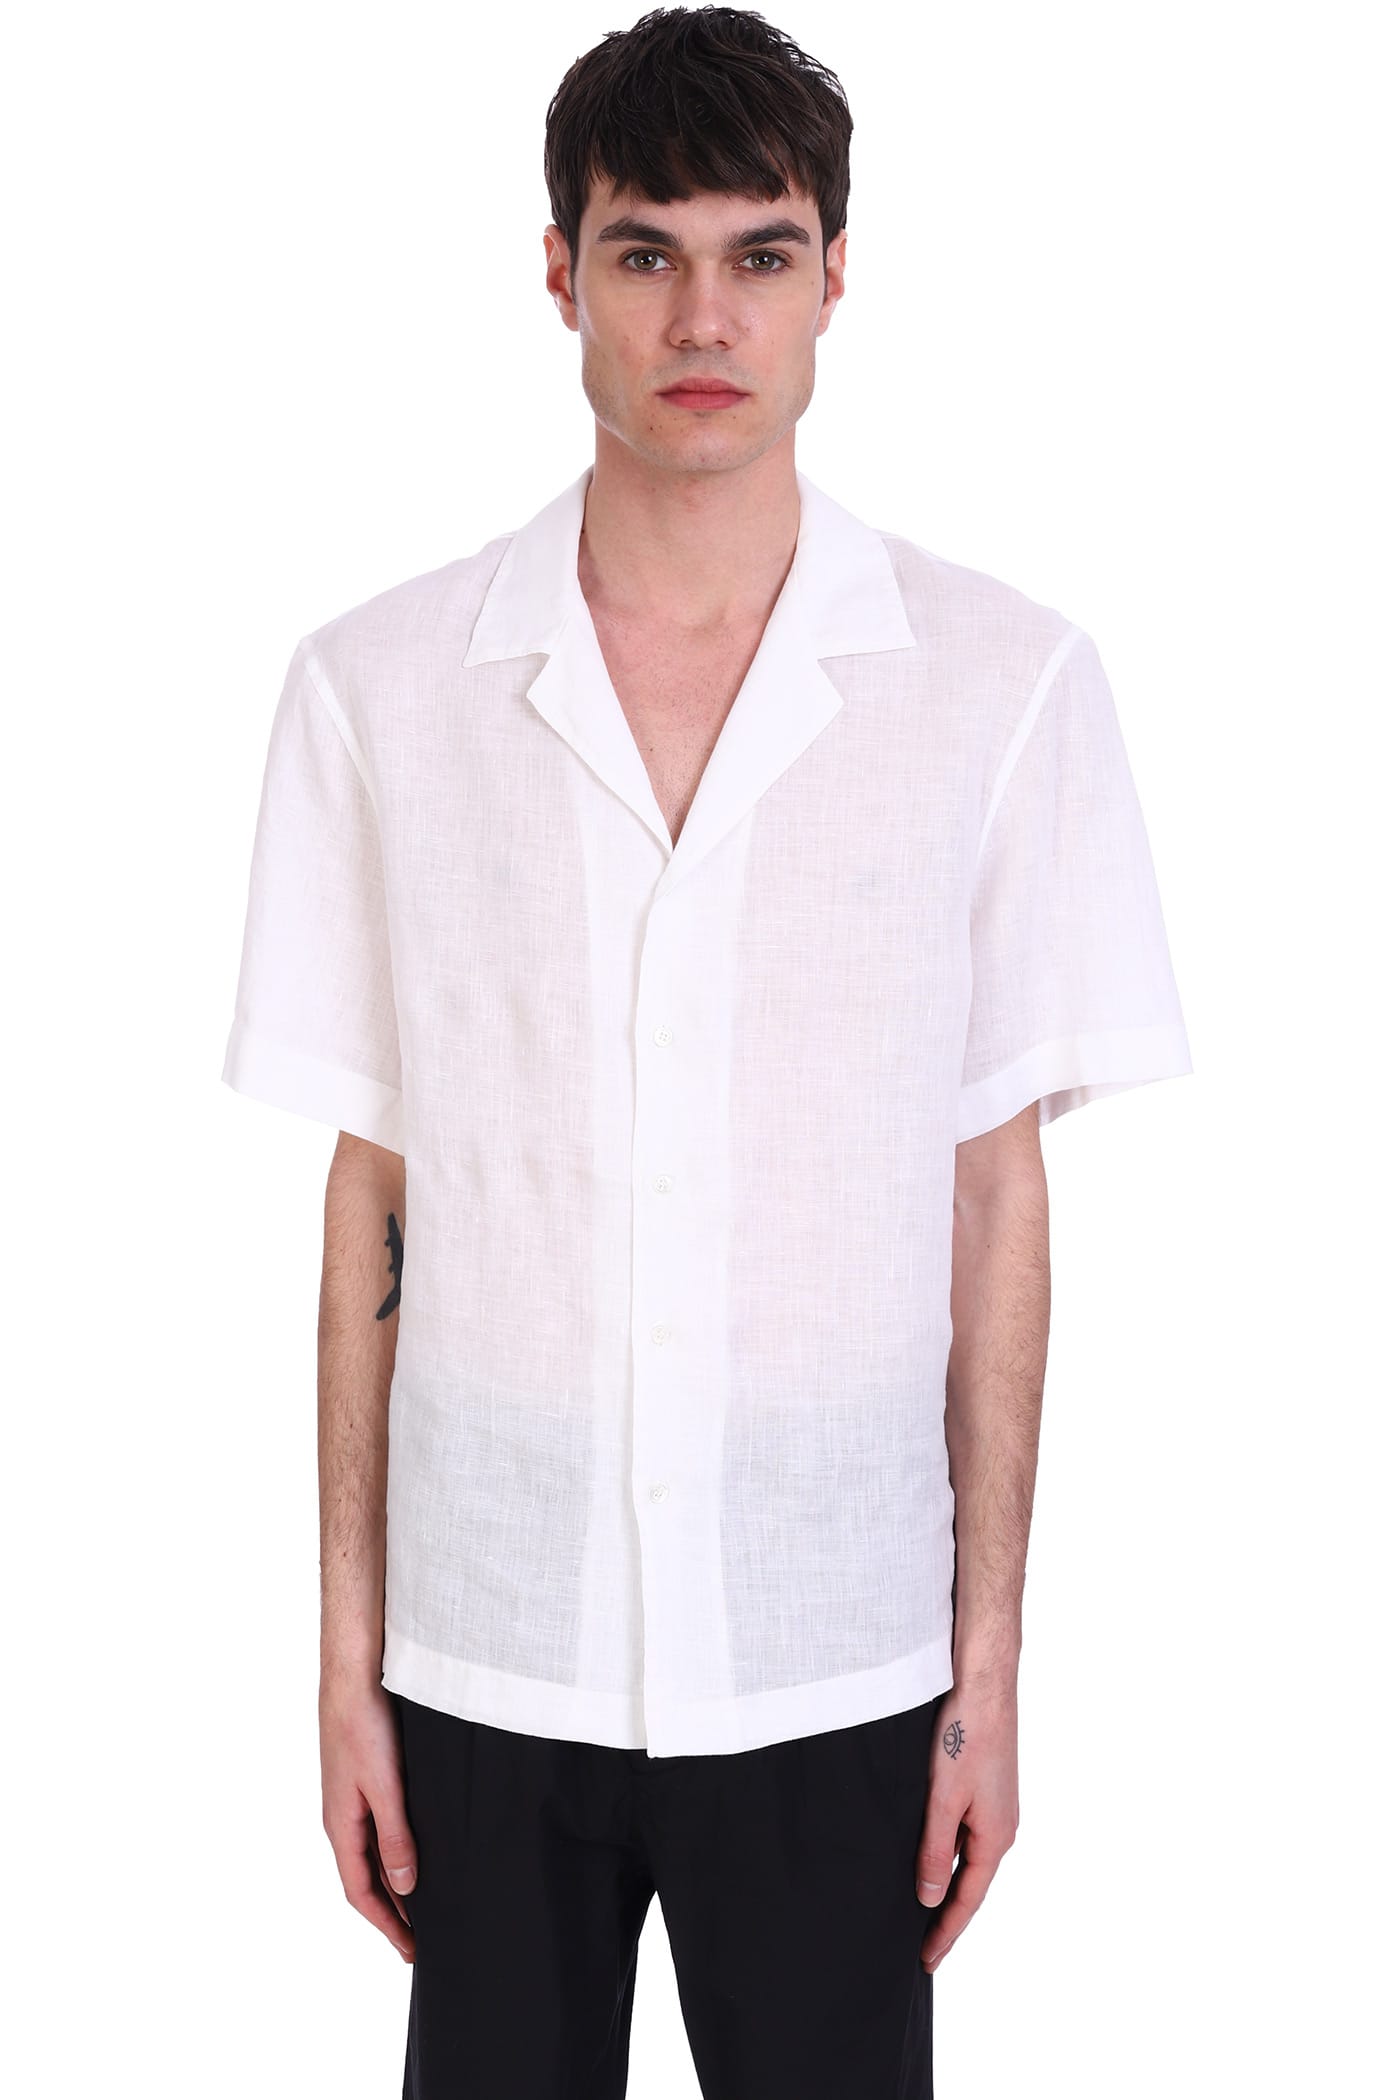 Mauro Gasperi Shirt In White Linen